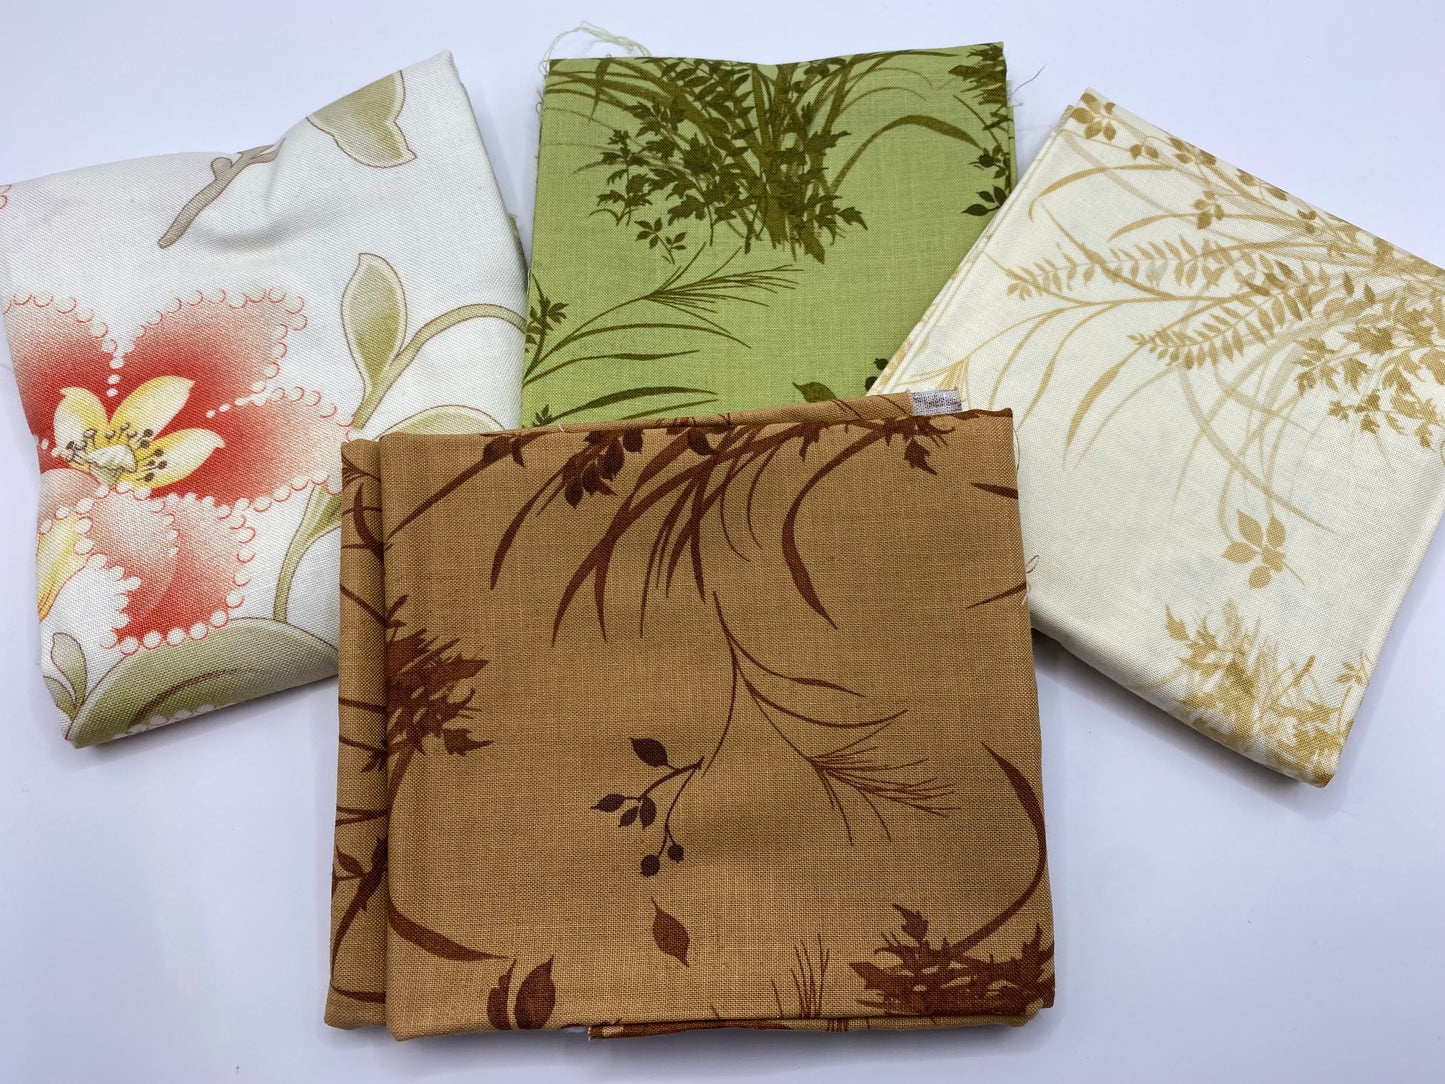 Fabric Fat Quarter Bundle - 'Autumn Colours' - 100% Cotton Fabric